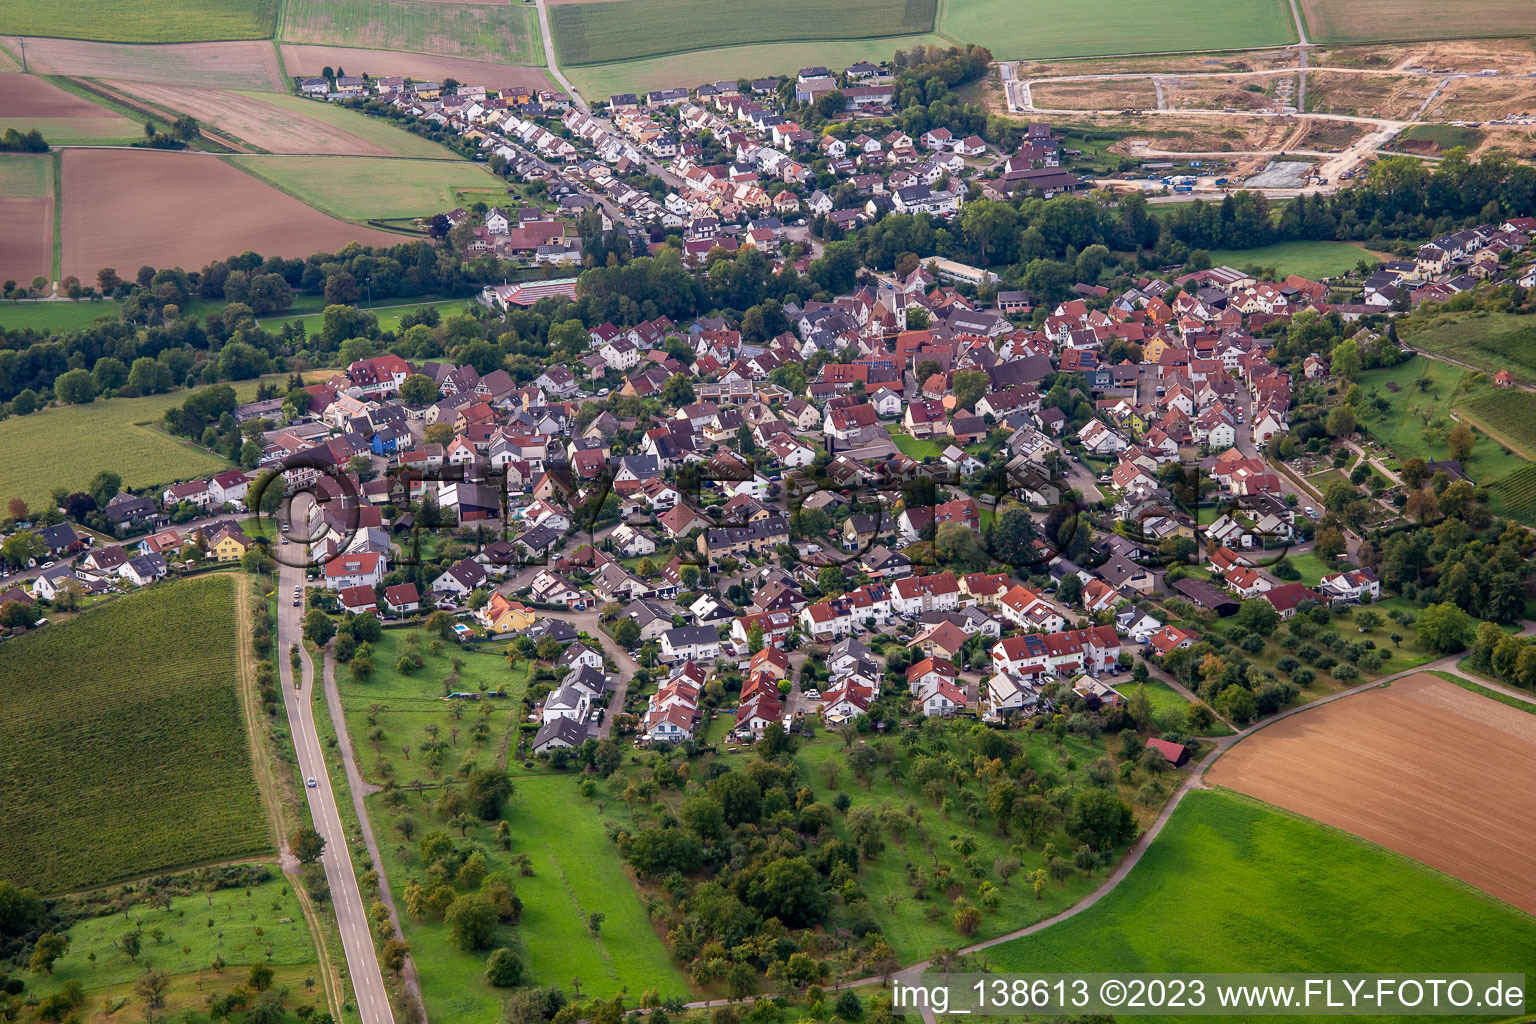 District Kleinbottwar in Steinheim an der Murr in the state Baden-Wuerttemberg, Germany